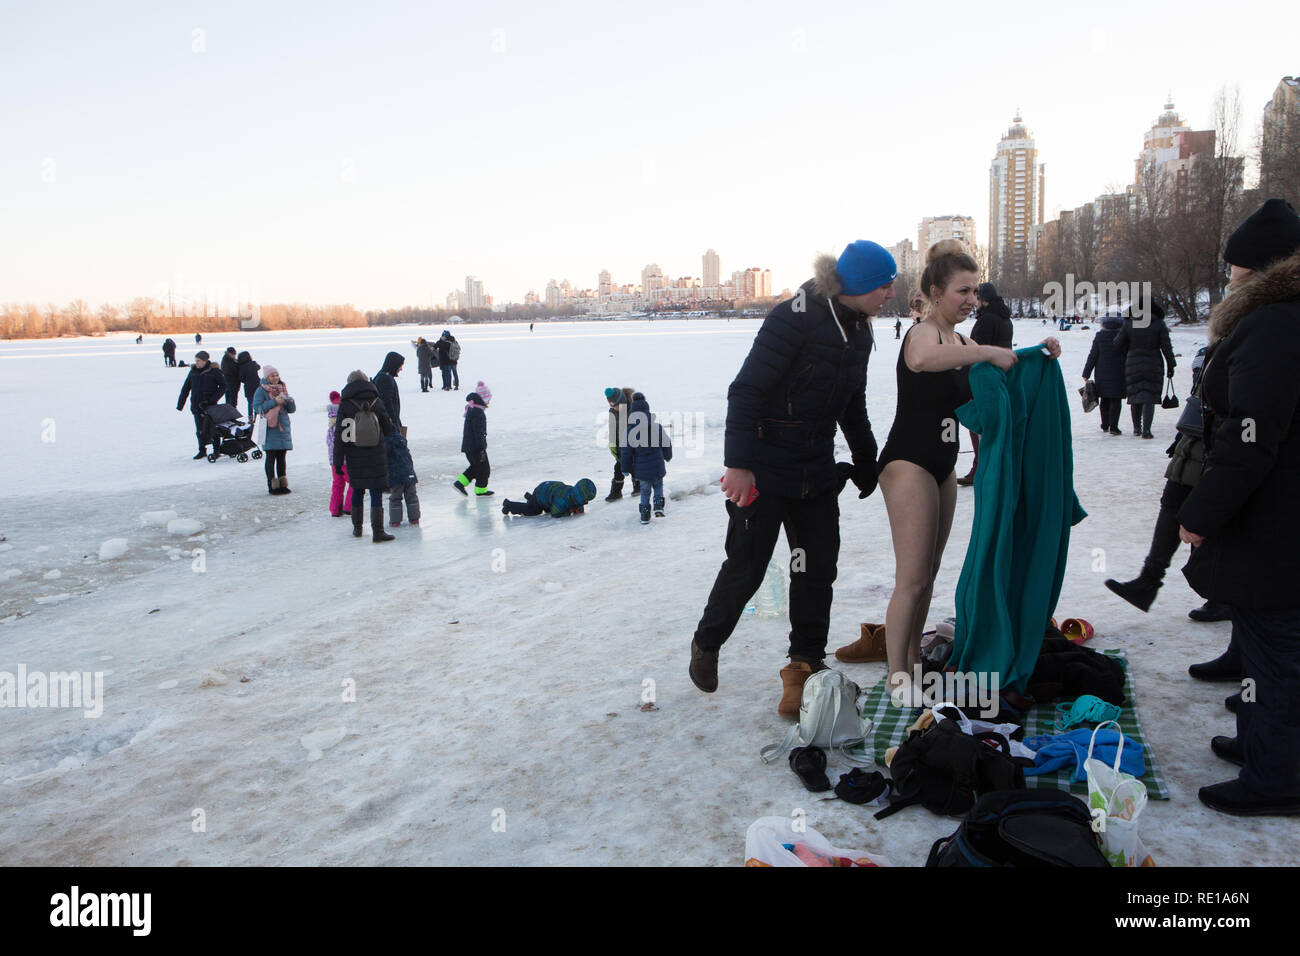 La famille ukrainienne sur matin de janvier se prépare pour une plongée dans l'eau froide avec jeune femme déjà en maillot de bain et un homme de plaisanter sur le vent Banque D'Images